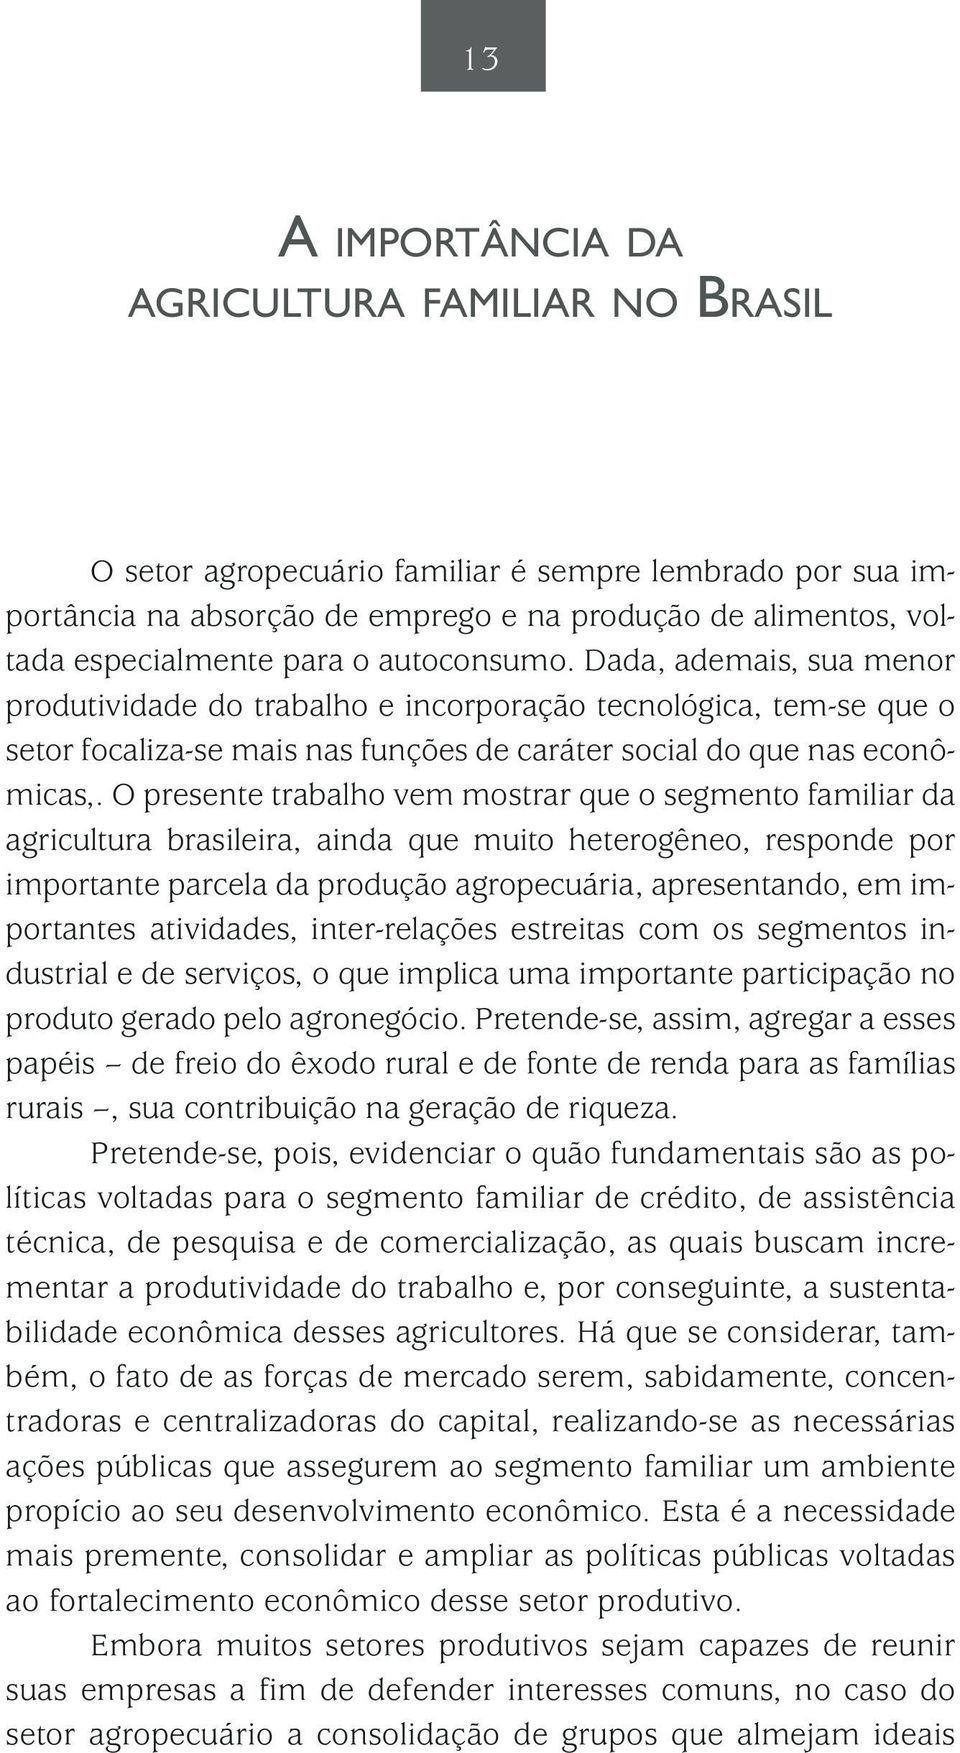 O presente trabalho vem mostrar que o segmento familiar da agricultura brasileira, ainda que muito heterogêneo, responde por importante parcela da produção agropecuária, apresentando, em importantes